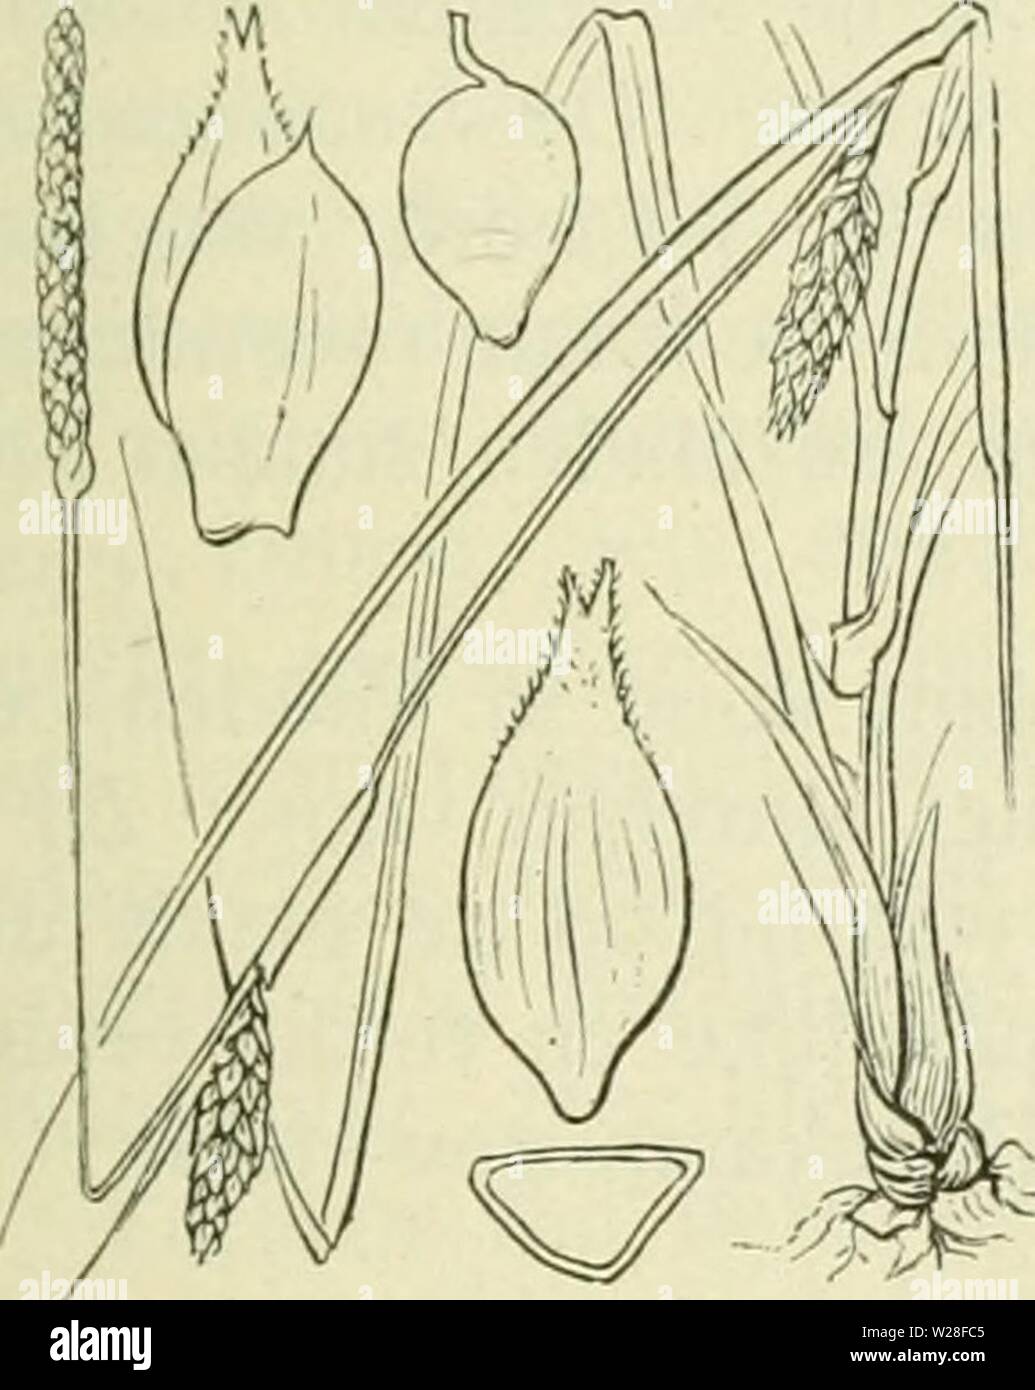 Image d'archive à partir de la page 444 de De flora van Nederland (1909-11). De flora van Nederland defloravannederl01heuk Année : 1909-11. Carex strigosa Fig. 326. zaani ina même iinitjes ile de la SLA. Deze (fiÂ". 32(5) le drickantit Iancctvormitj,'-ellipsoÃ¯discli ;-, environ 3 mM, lanj', veelnervi noiei.u,(Jeliji&Lt ; dans den ziir iiei&lt;notten snavel versmald. Het mannelijke aartje los- bloemij ; est, petite, verlcn.ud, tof 5 cM, lanf', de l'iets bruinachtig kafjes zijn niet'stevijje middenstreep, groene. De vruchten zijn nog niet zeer klein, 2 mM lang, eirond driekanti,.u. Â . 6 à 10 dM. Mei, Juni. Voorkomen Banque D'Images